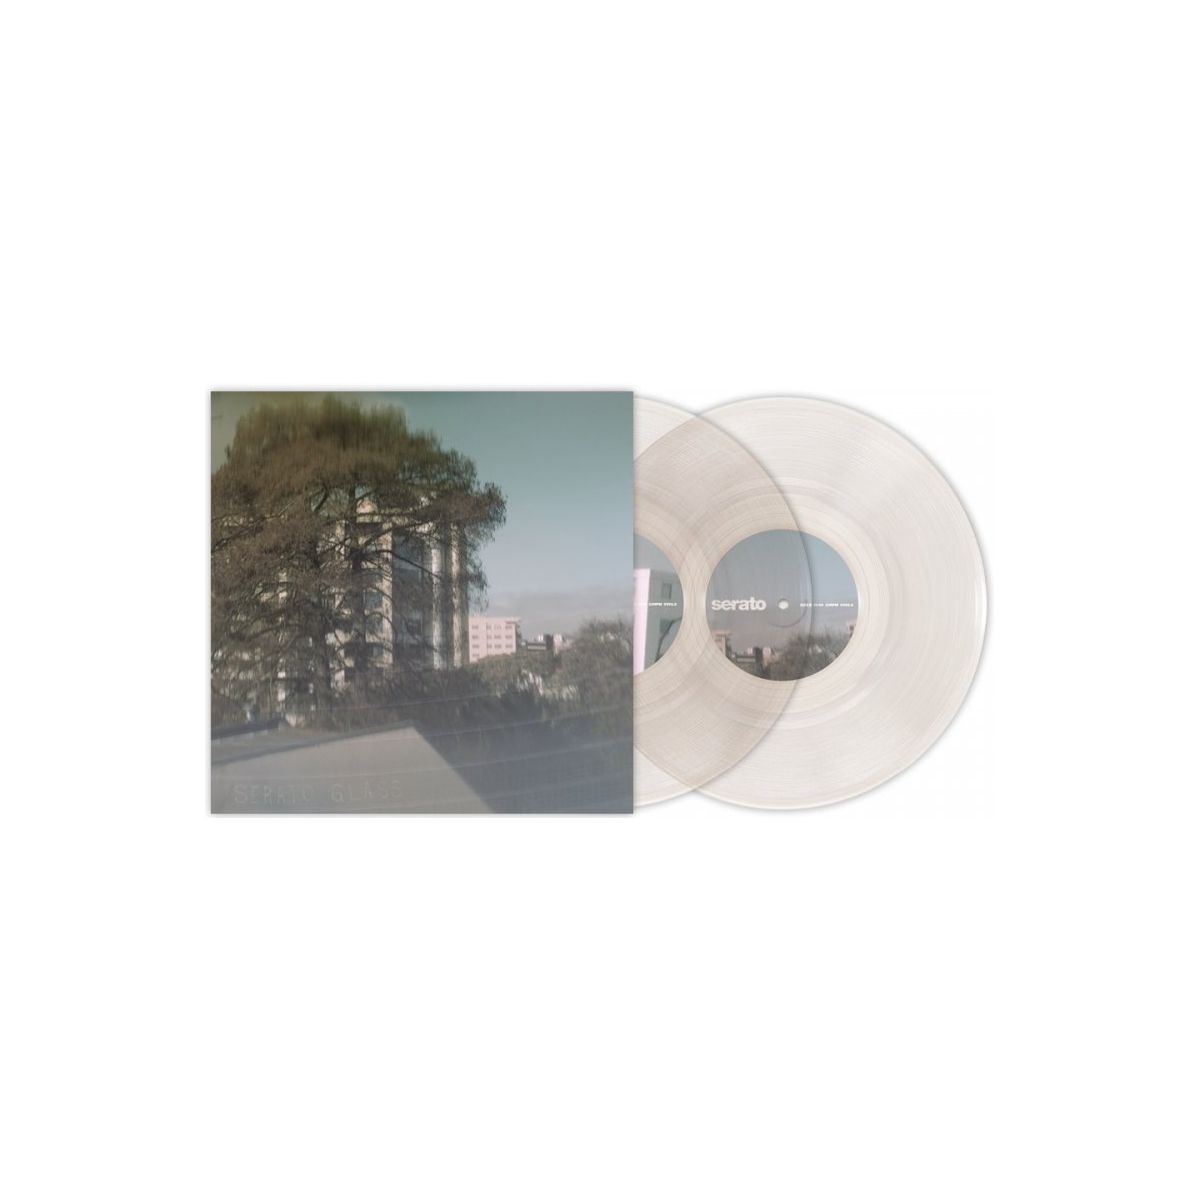 Vinyles time codés - Serato - Paire Vinyl Clear 10